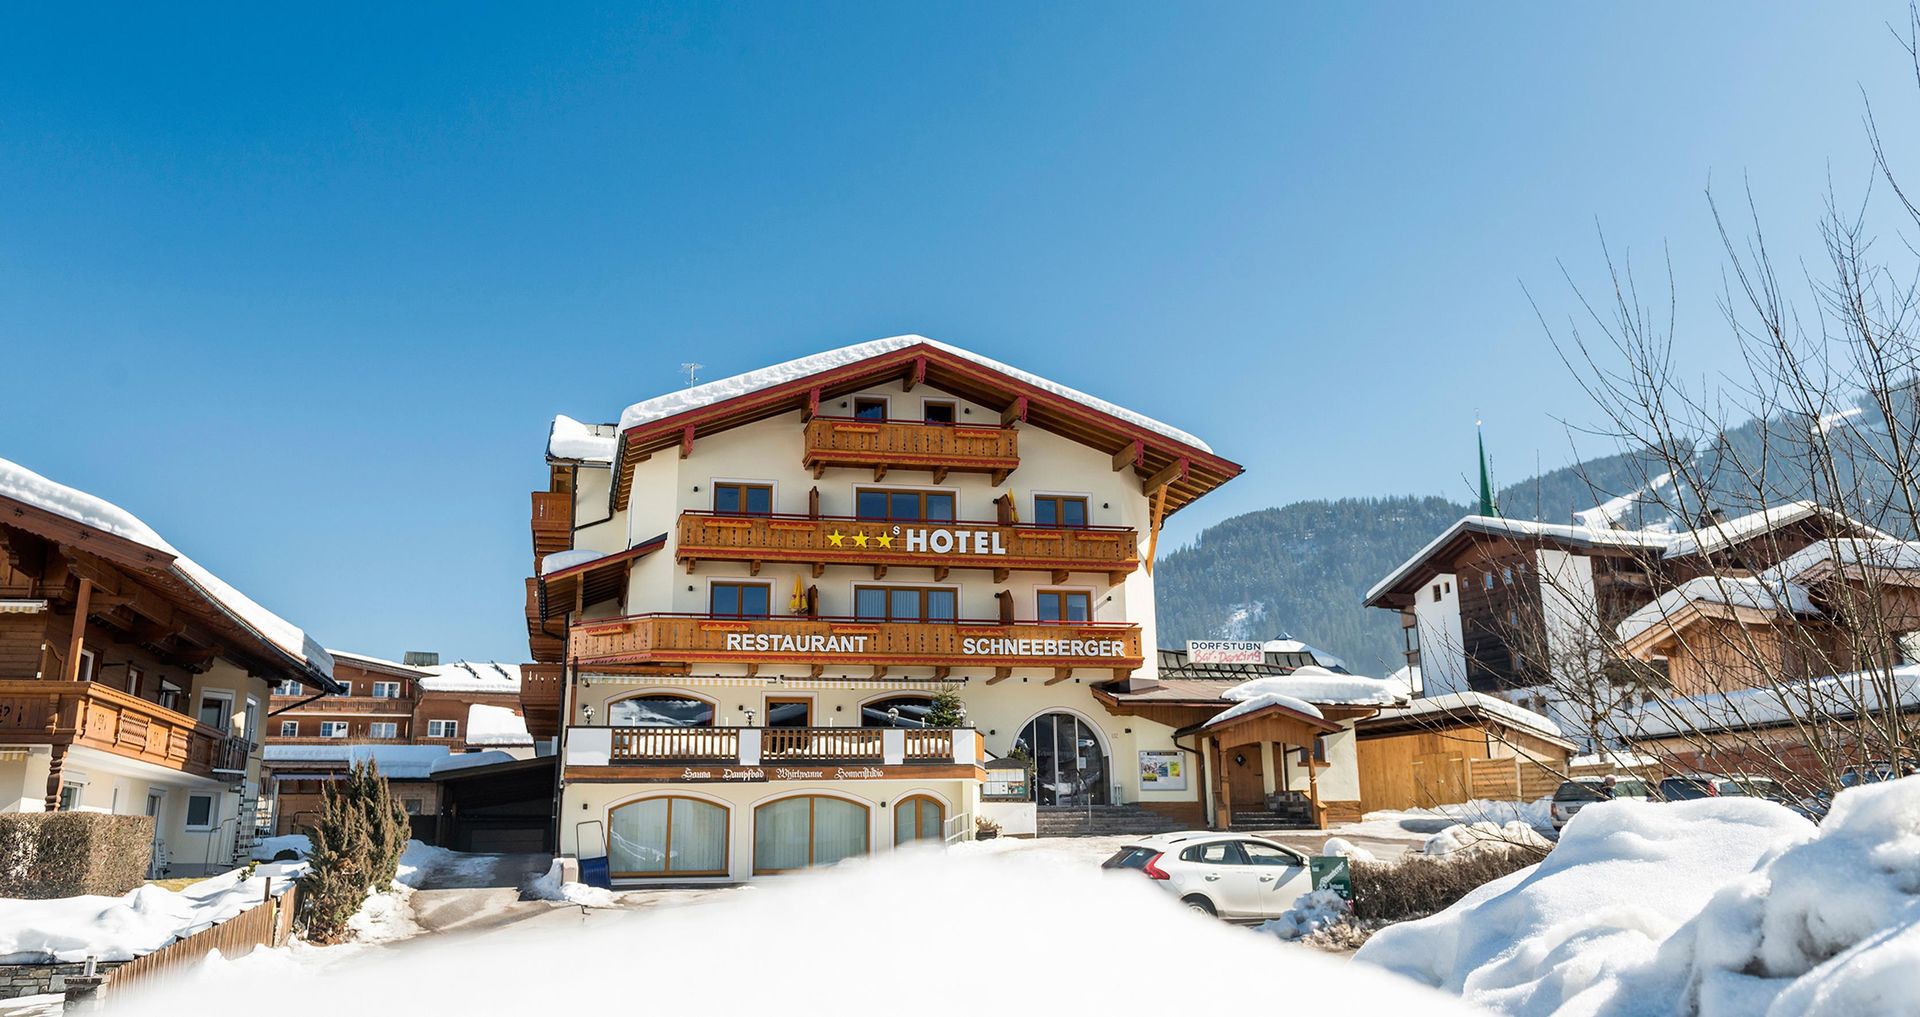 Meer info over Hotel Schneeberger  bij Wintertrex